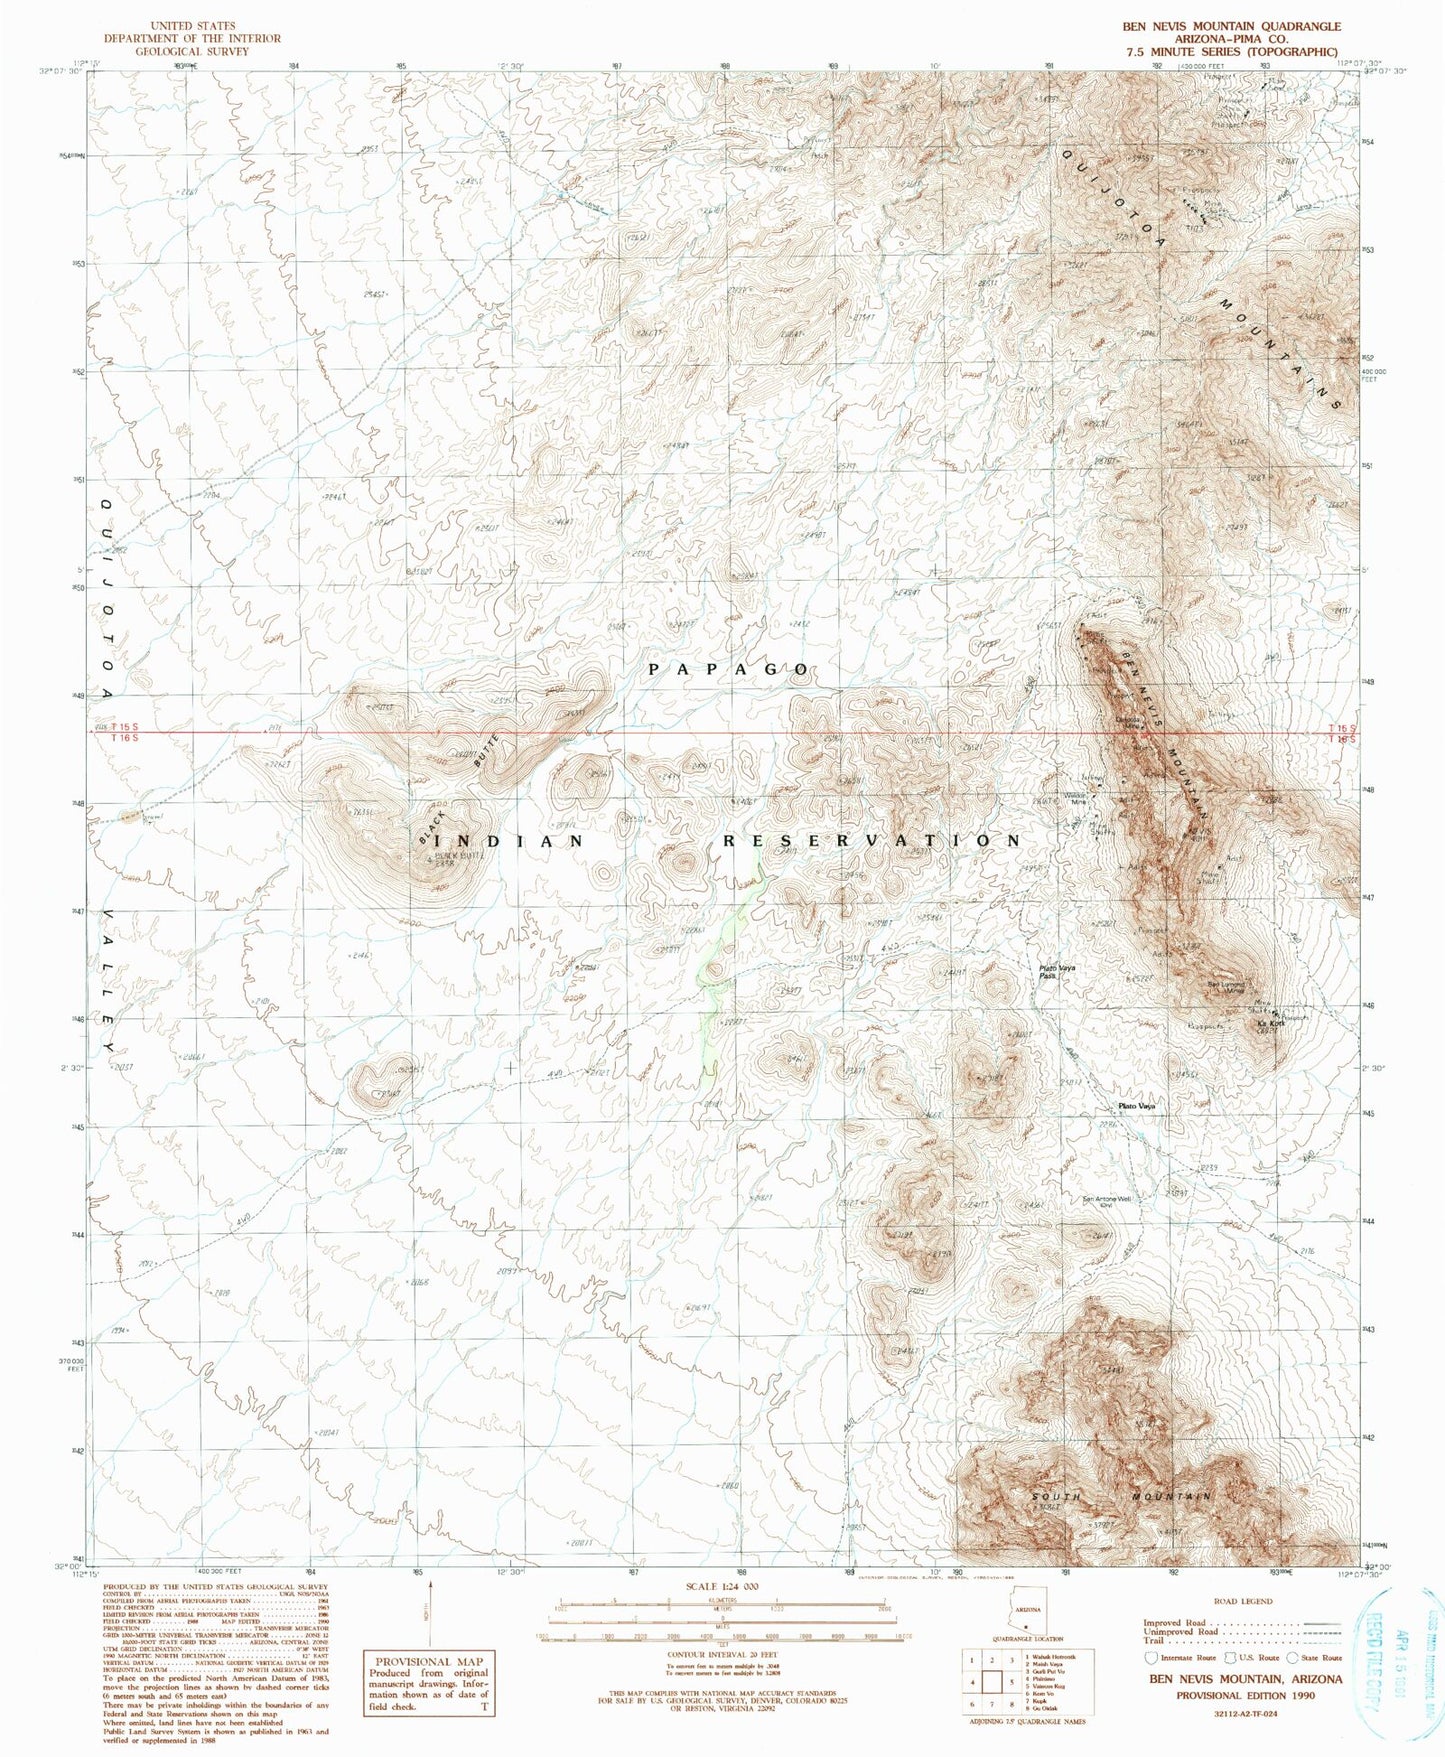 Classic USGS Ben Nevis Mountain Arizona 7.5'x7.5' Topo Map Image